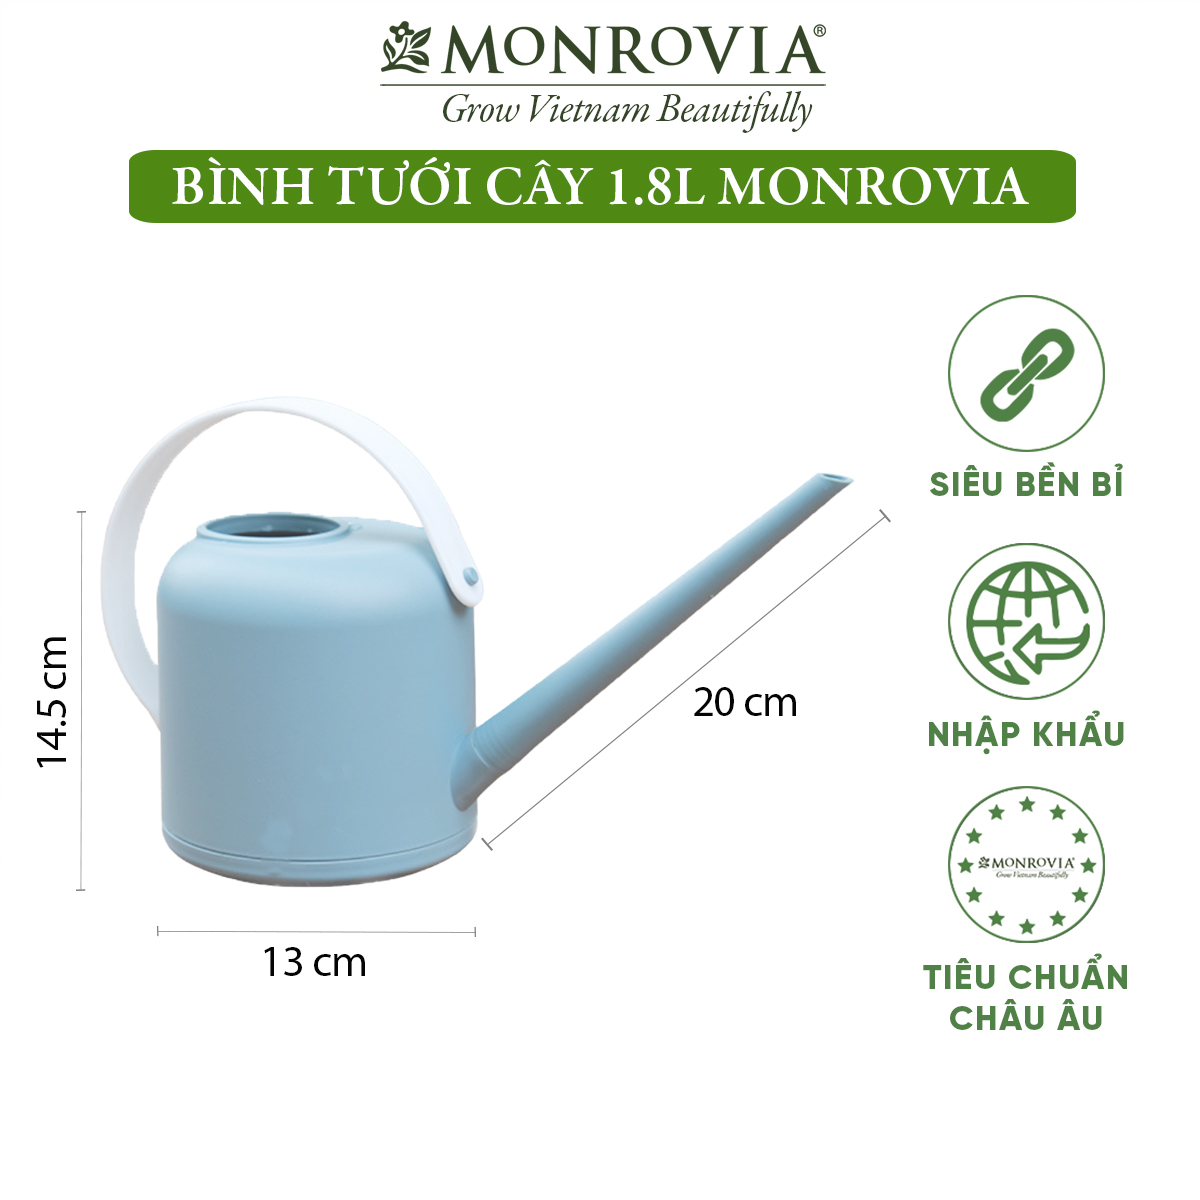 Bình tưới cây vòi dài MONROVIA 1.8 lít, tháo lắp dễ dàng, tiện lợi